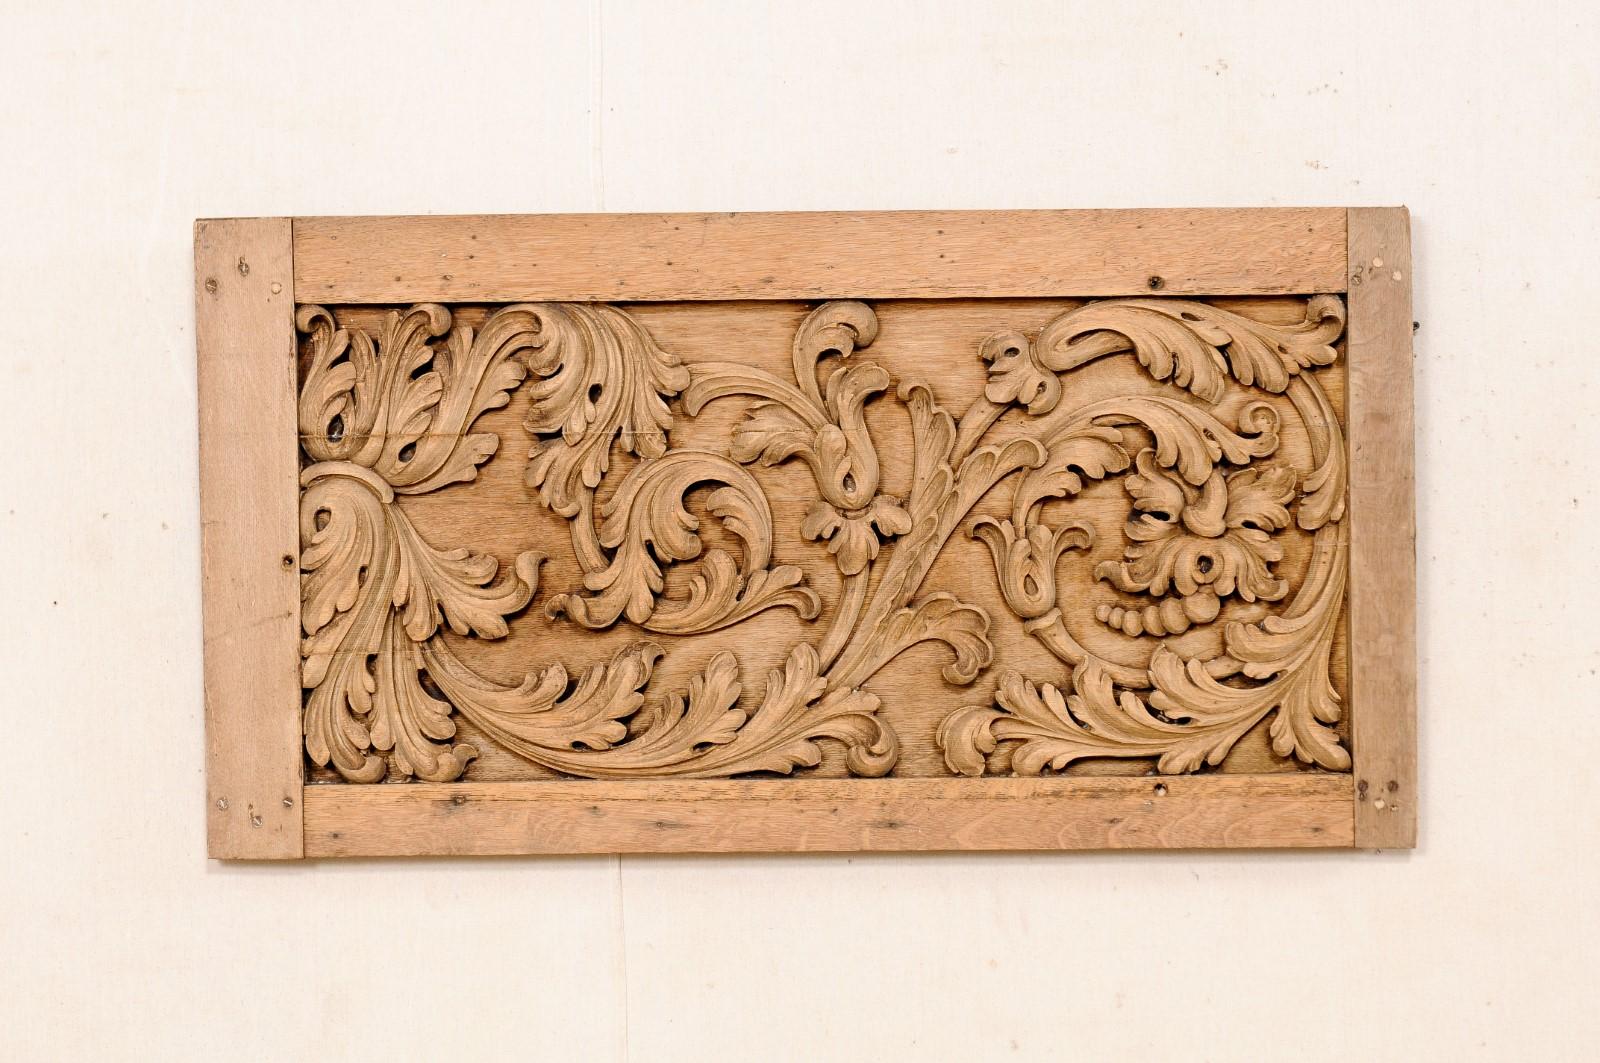 Eine geschnitzte französische Holztafel aus dem 19. Jahrhundert. Diese antike Wanddekoration aus Frankreich besteht aus einem rechteckigen Rahmen aus geraden Brettern, dessen Mitte mit einem handgeschnitzten Reliefmotiv aus geschwungenen